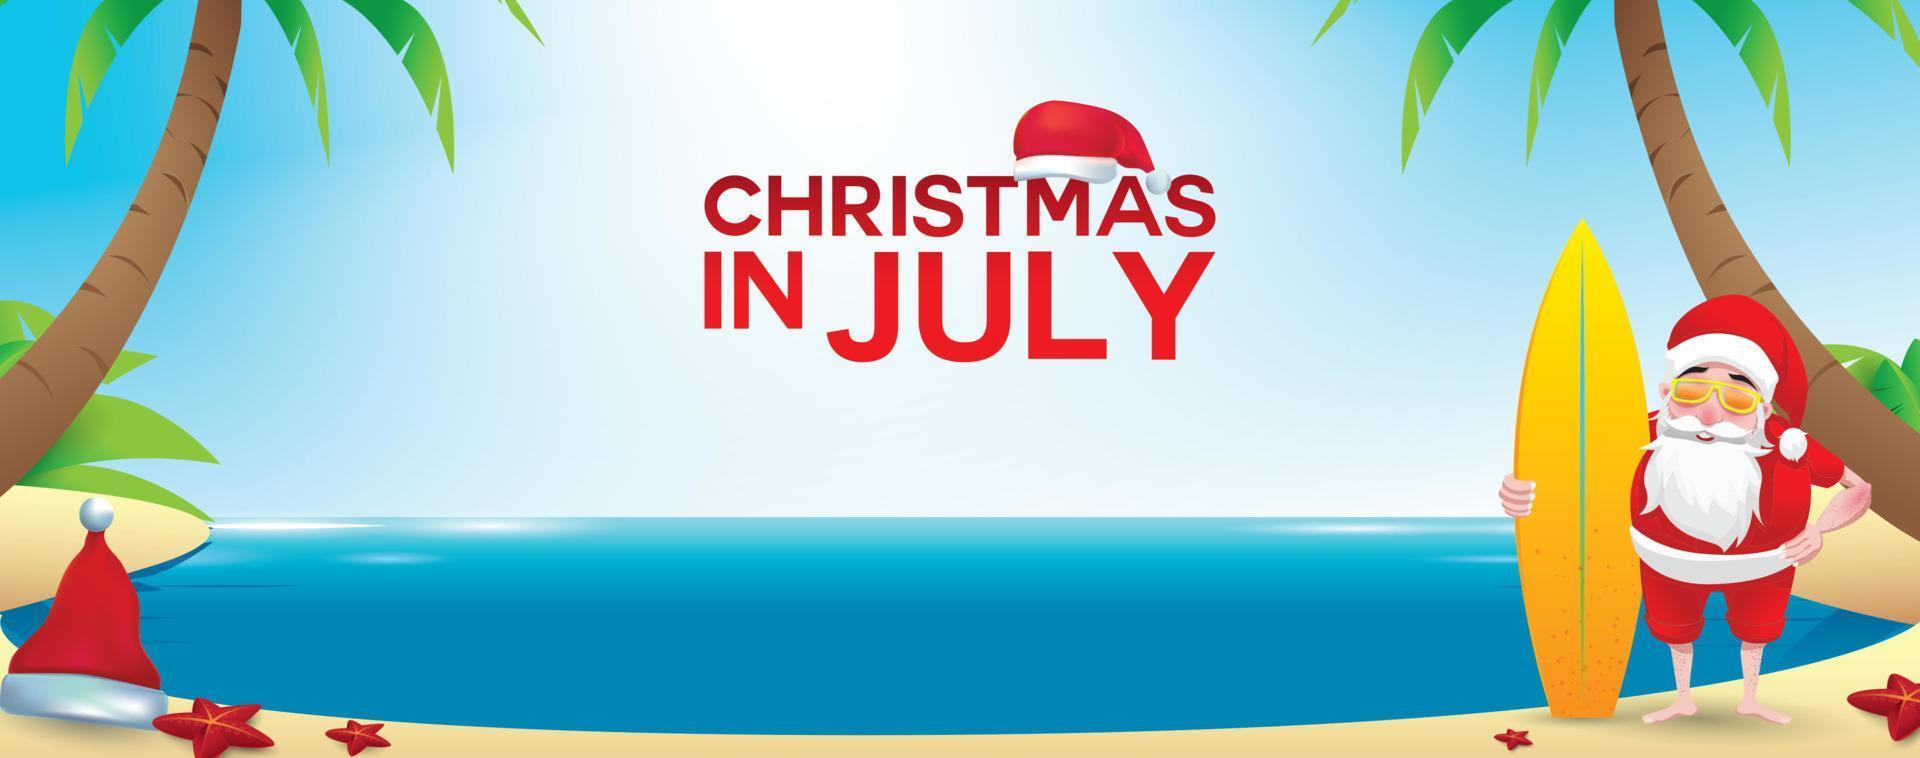 weihnachten im juni, juli, august, für plakat, marketing, werbung, sommerschlussverkauf, grußkarte. weihnachtsmann im sommer mit kopierraum für text vektor